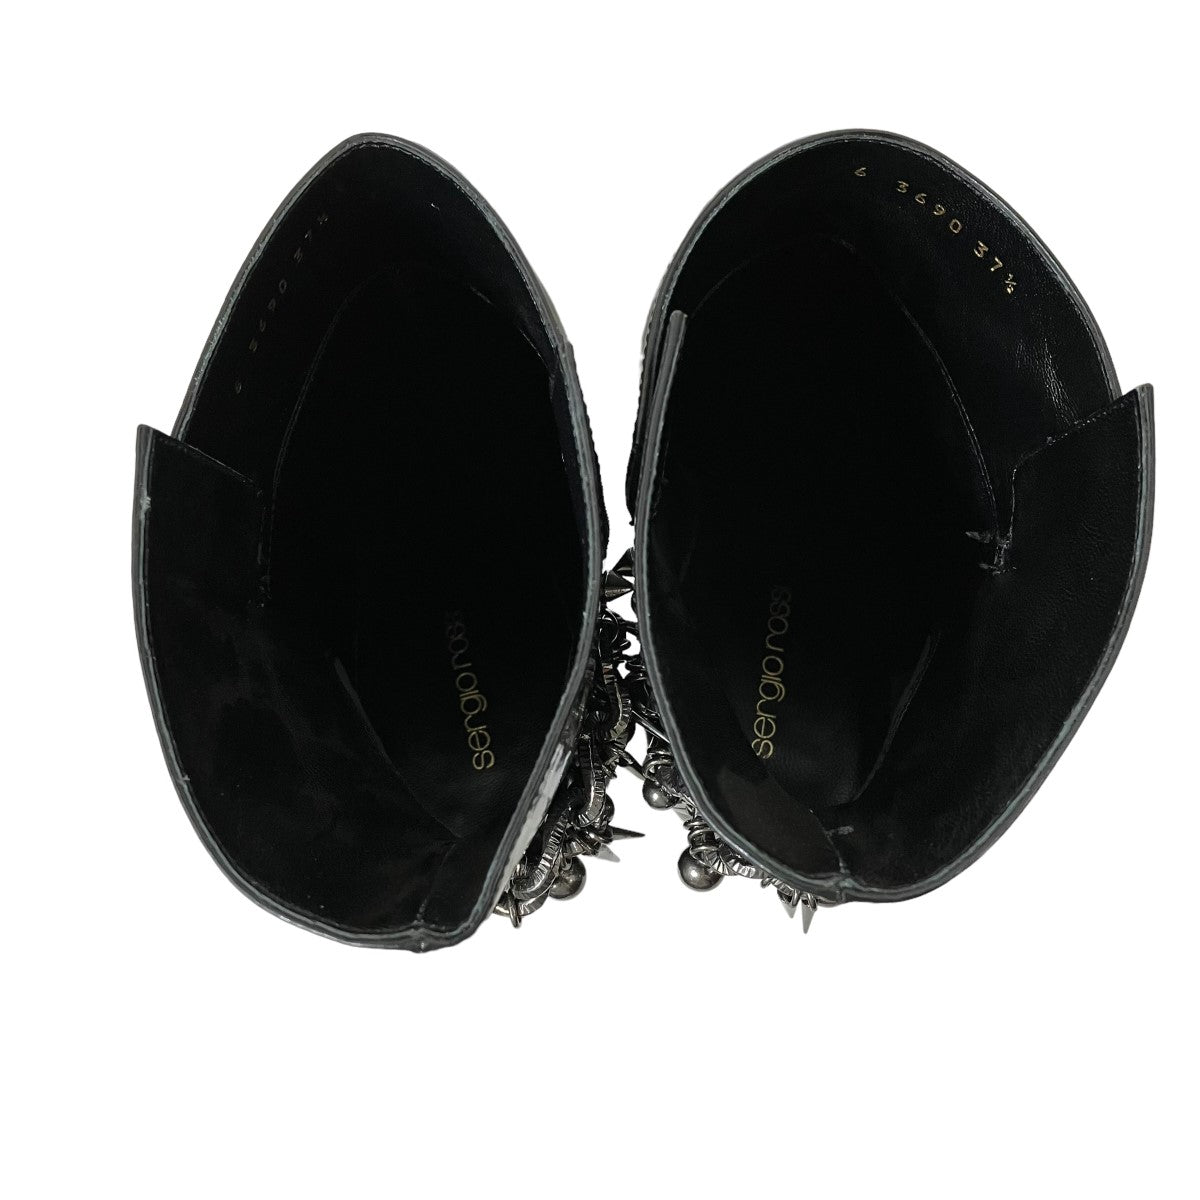 sergio rossi(セルジオロッシ) ブーツ3690 3690 ブラック サイズ 24 